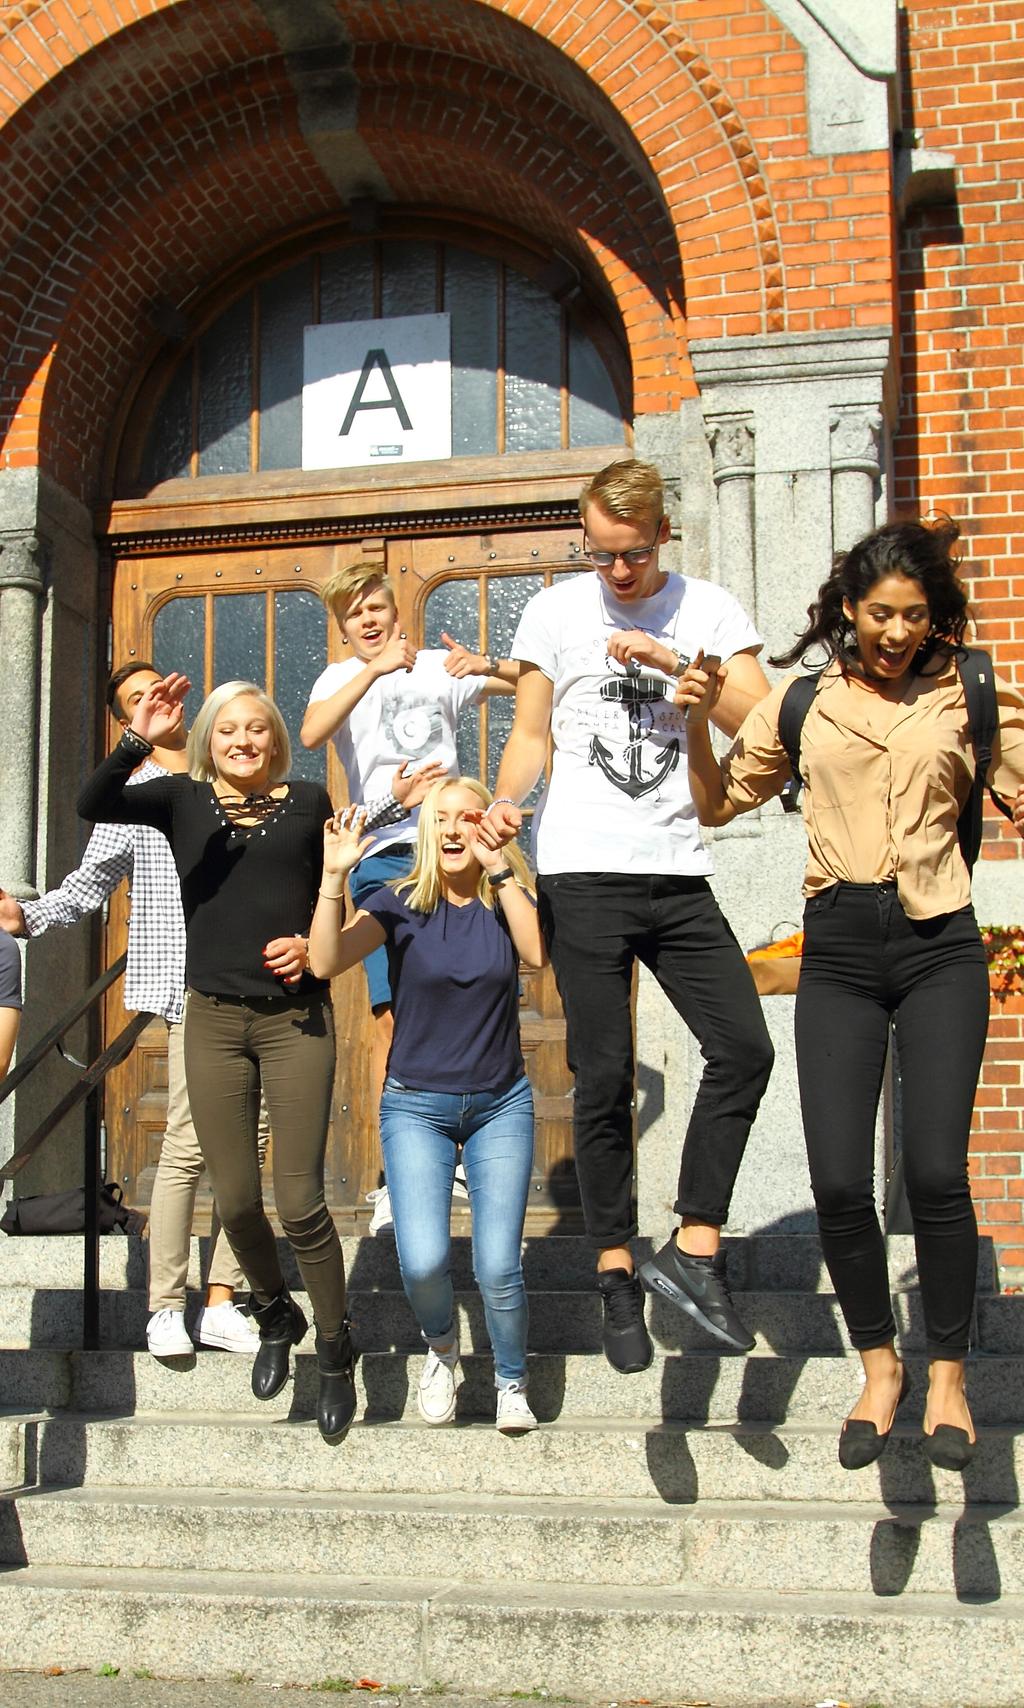 Alla barn, elever och studerande från förskola till vuxenutbildning i Trelleborgs kommun, har rätt till likvärdig, normmedveten studie - och yrkesvägledning.